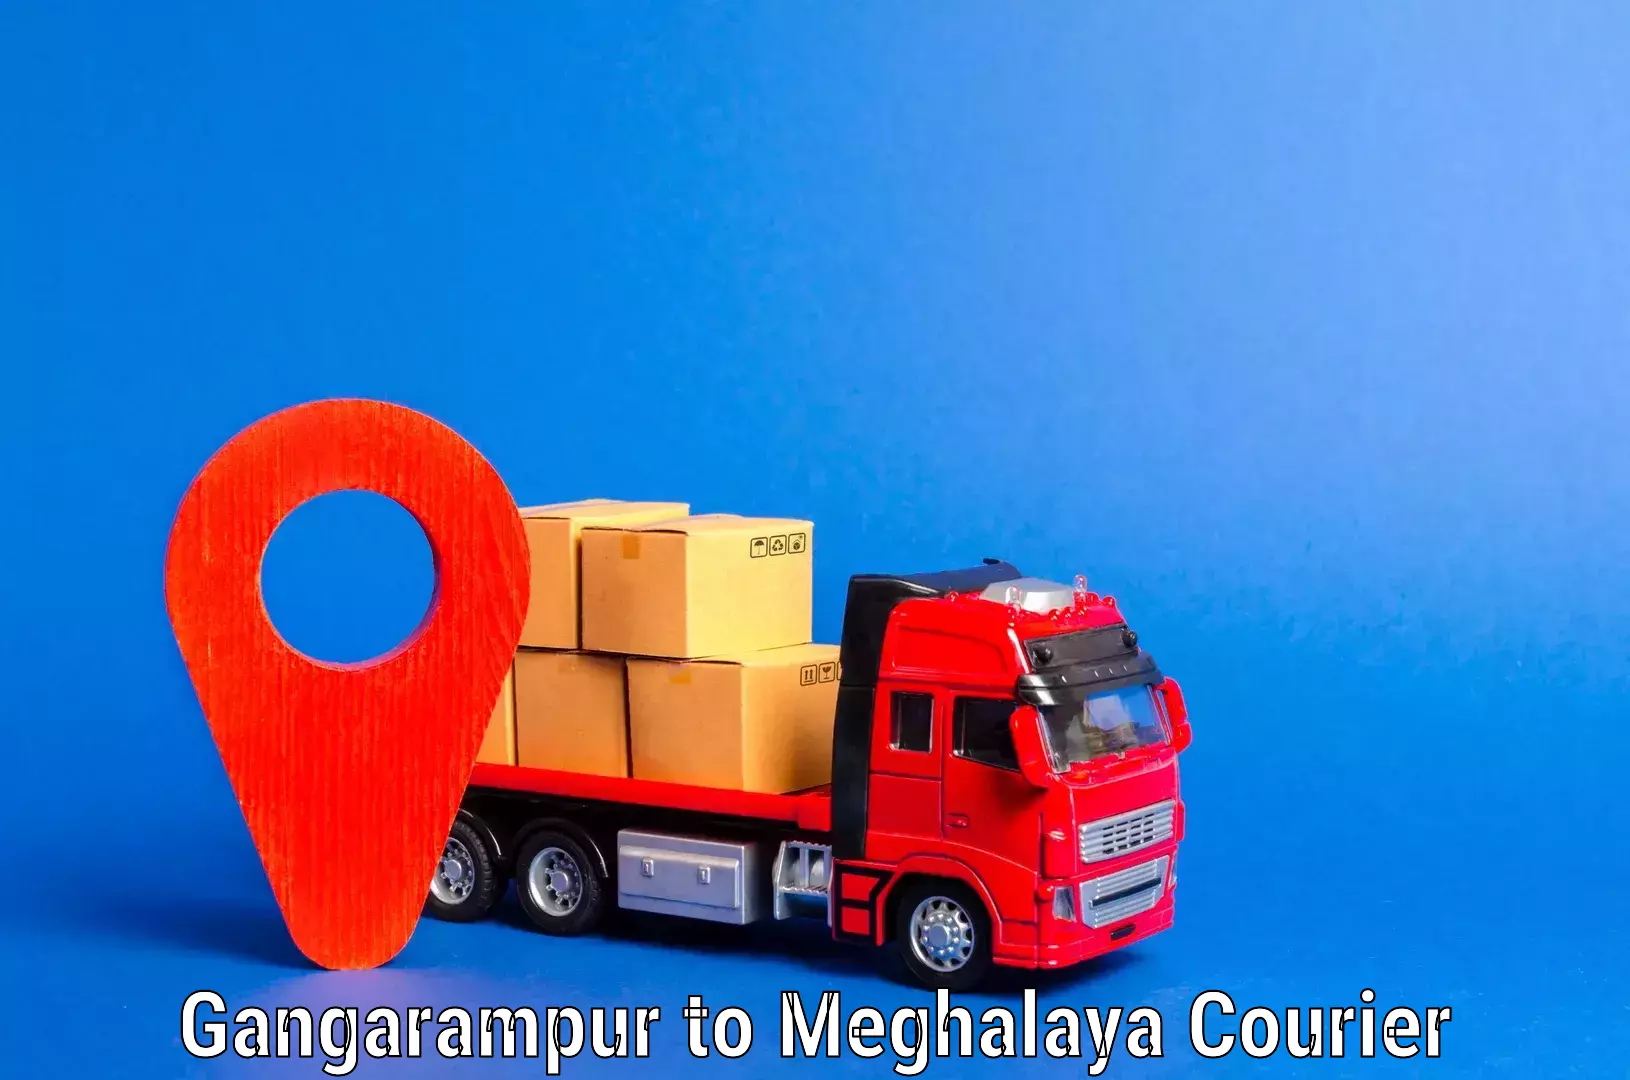 Furniture transport and storage Gangarampur to Meghalaya